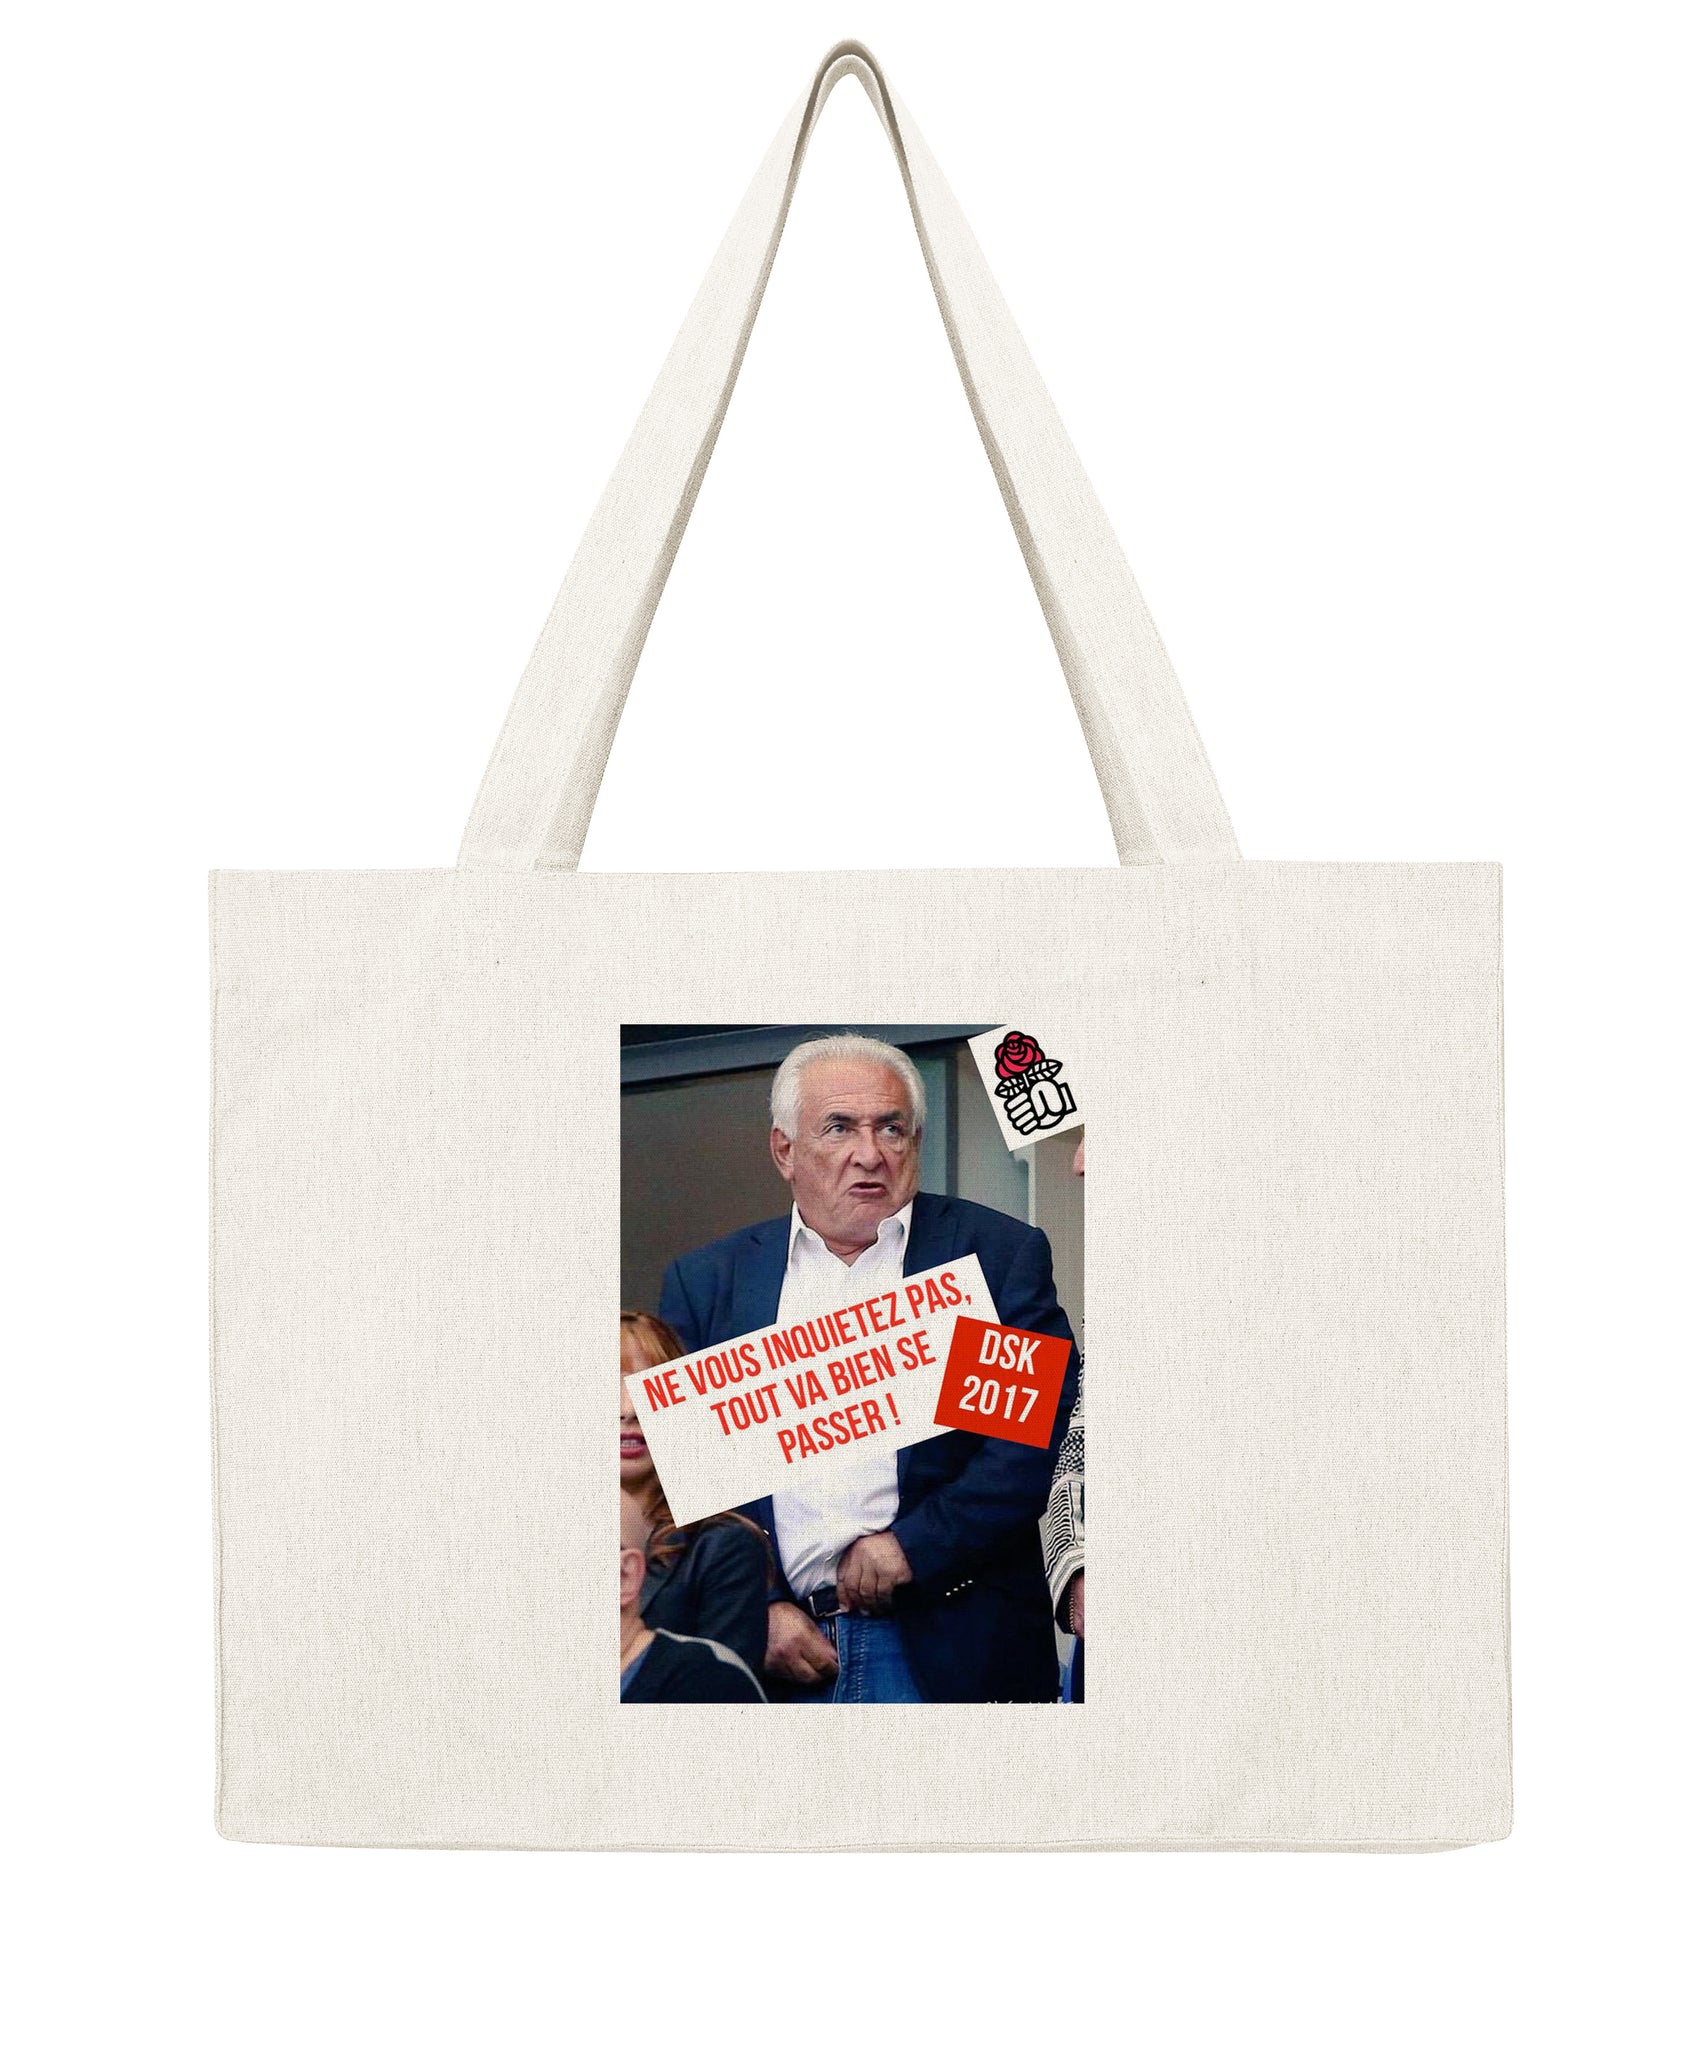 DSK ne vous inquiétez pas - Shopping bag-Sacs-Atelier Amelot